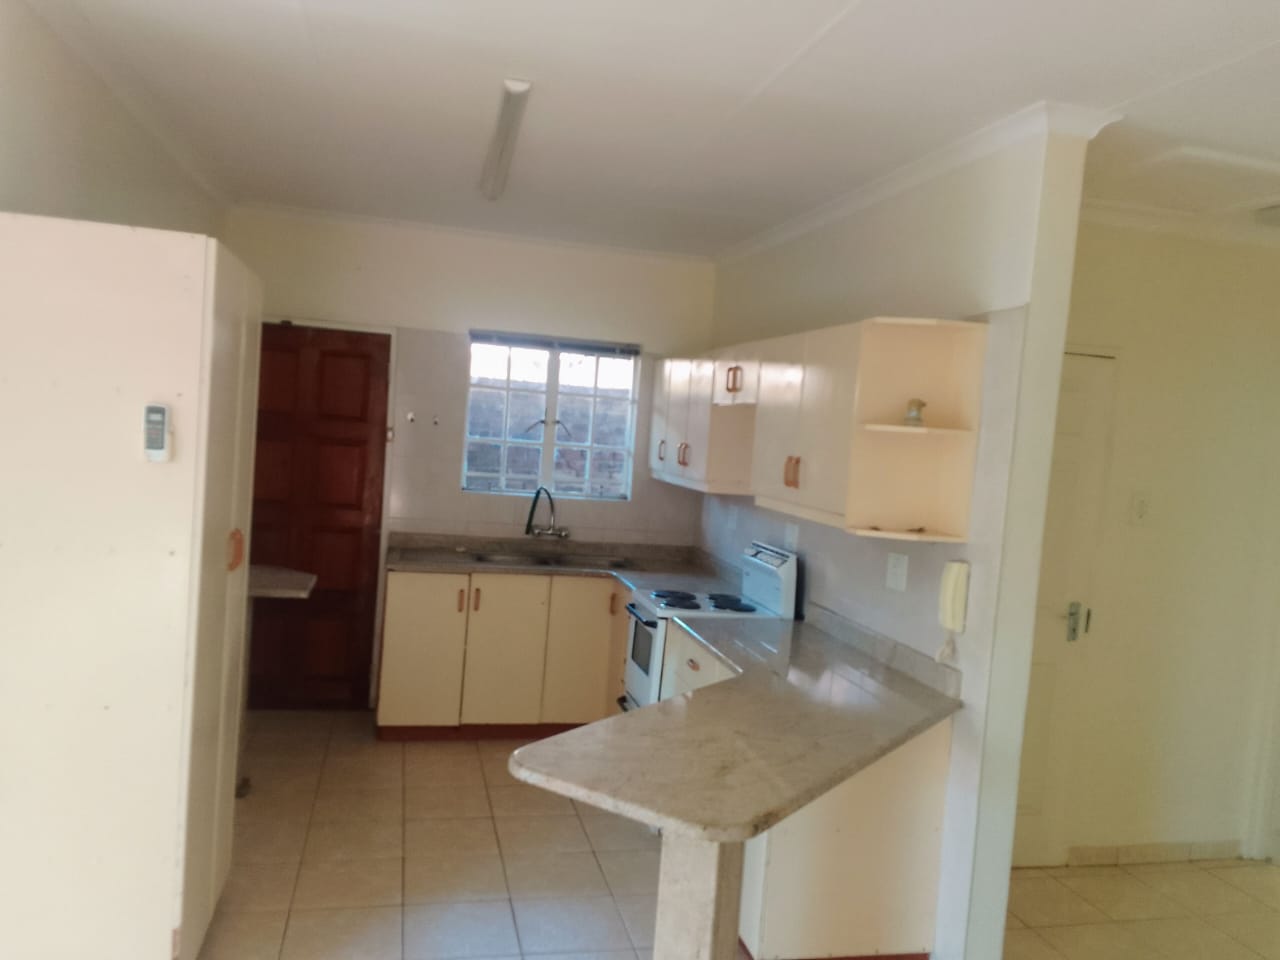 2 Bedroom Property for Sale in Pioneer Park KwaZulu-Natal